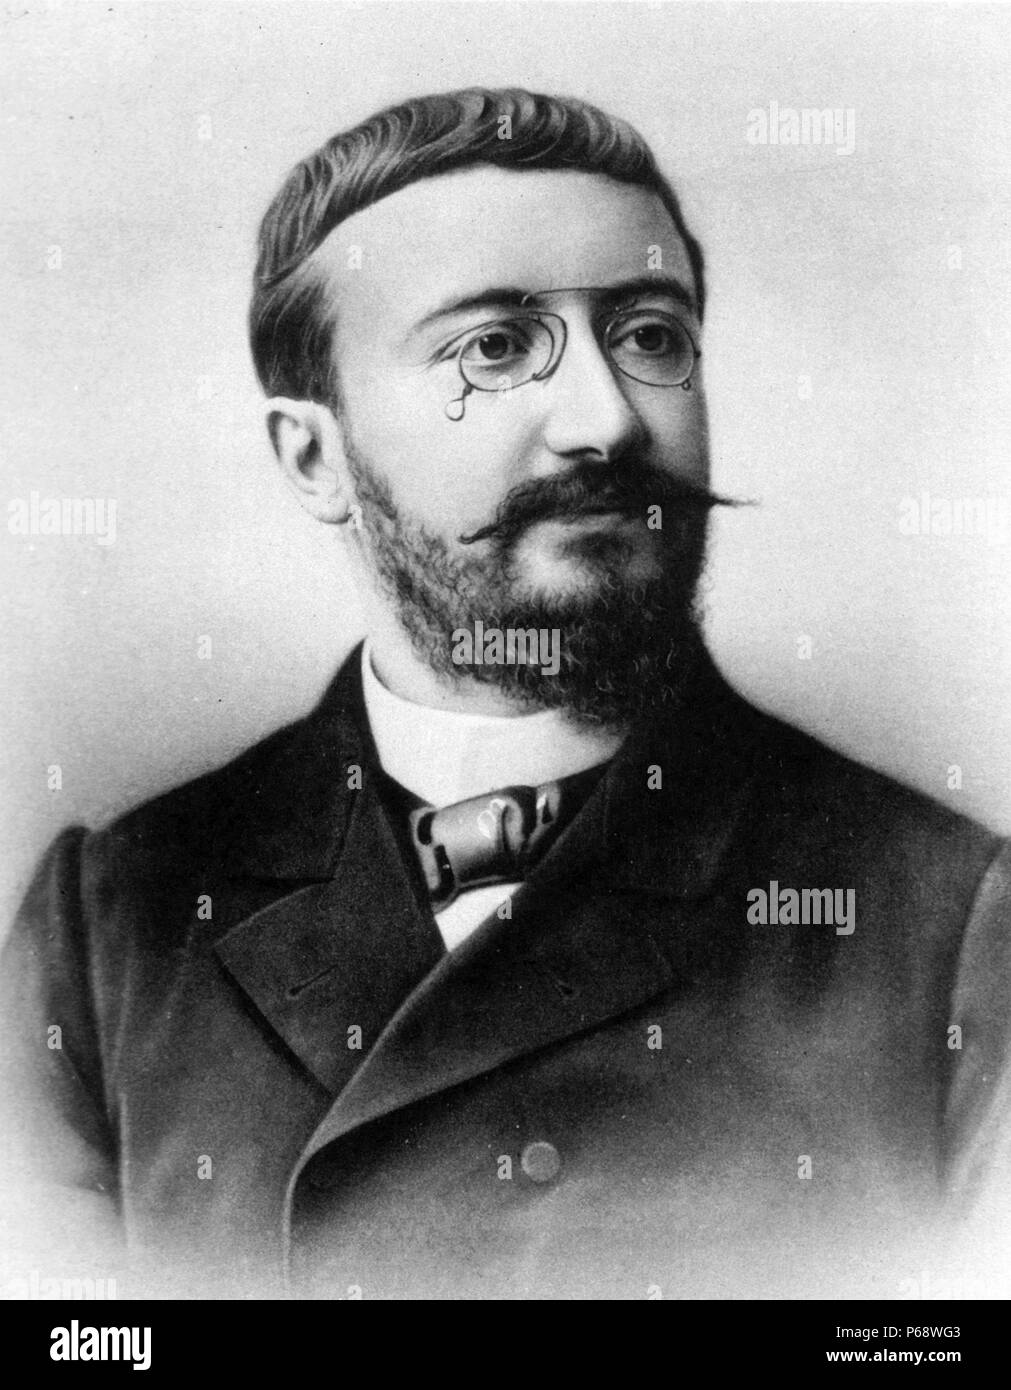 Alfred Binet (8 luglio 1857 - 18 ottobre 1911) era un psicologo francese che ha inventato il primo pratico test di intelligenza, la scala di Binet-Simon Foto Stock